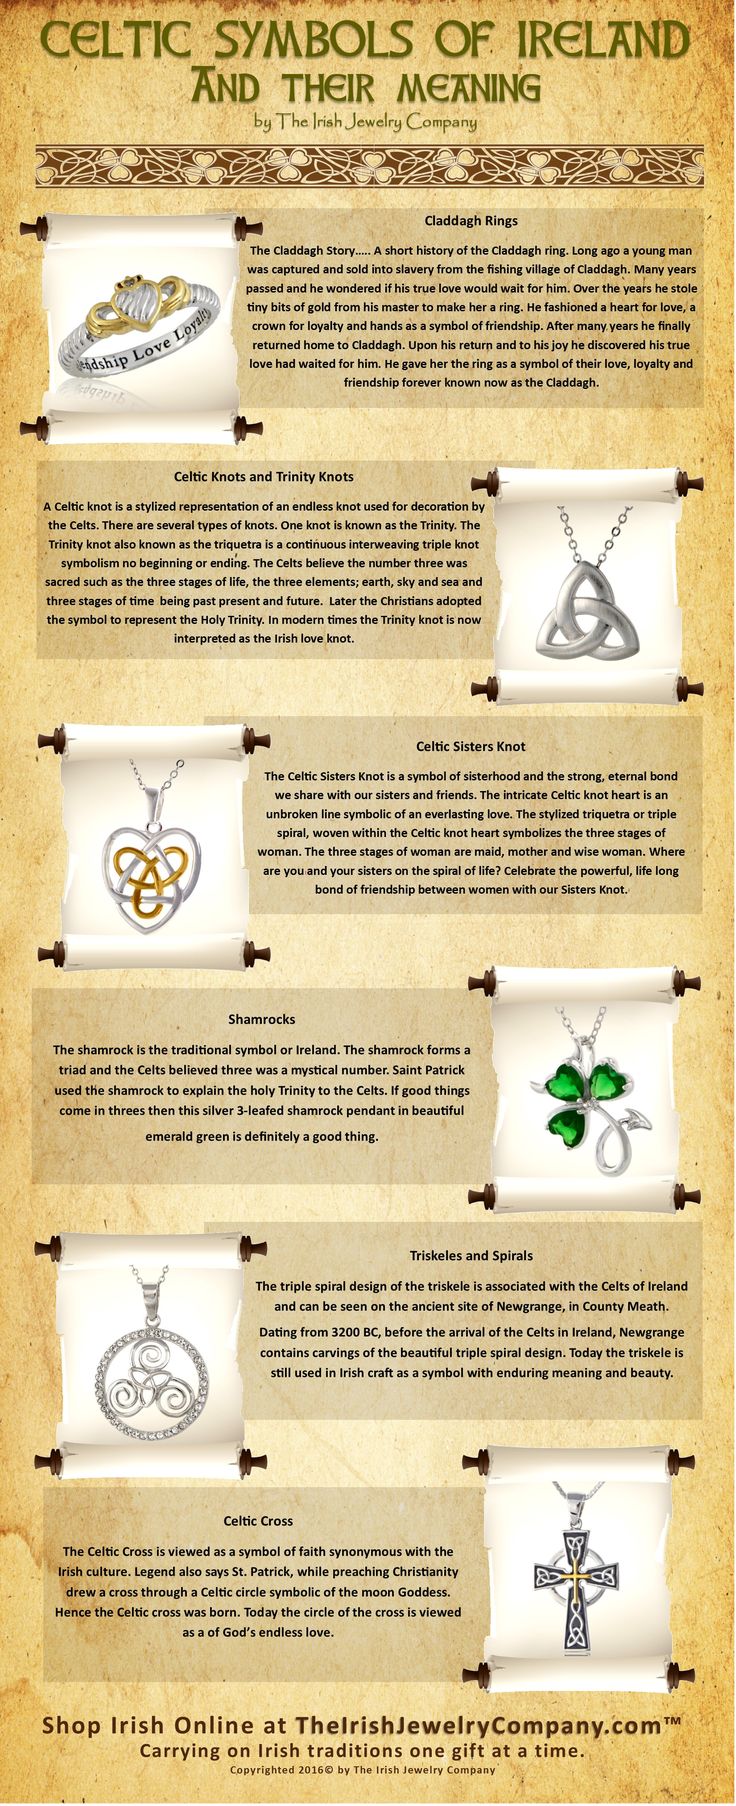 Vysvetlenie symbolov Írska a ich významu v írskej kultúre